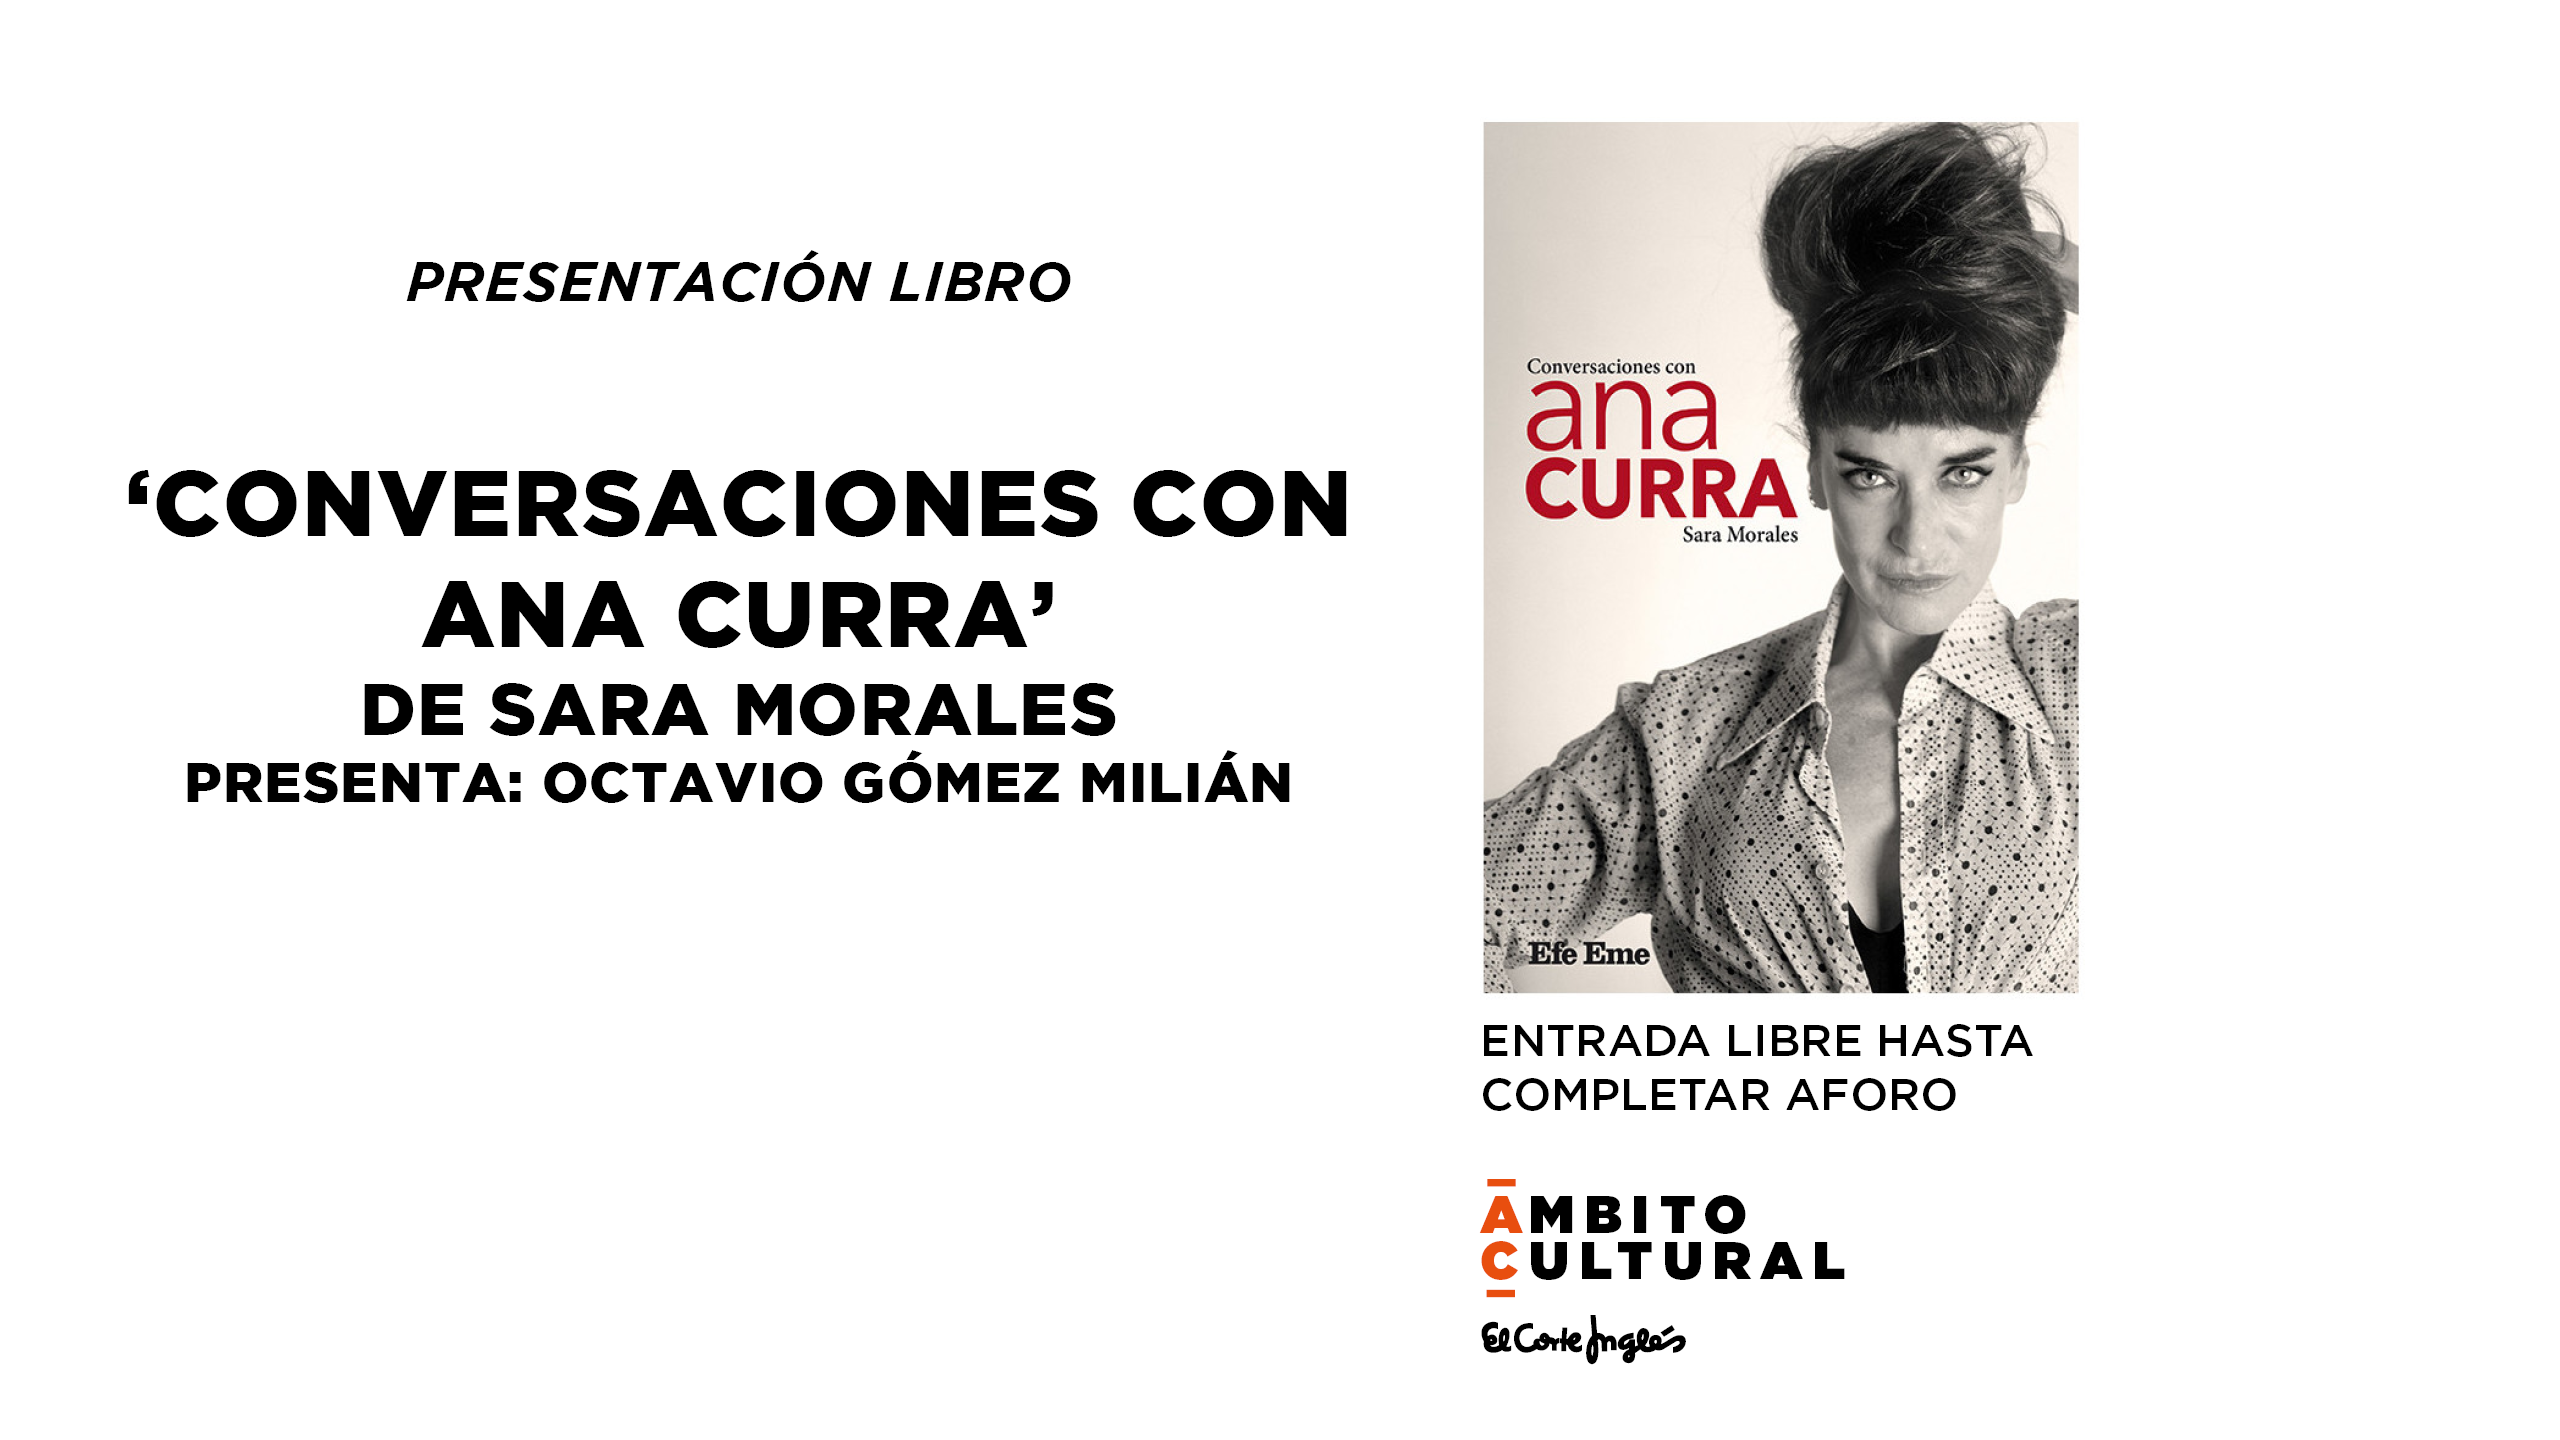 Imagen del evento PRESENTACIÓN LIBRO: 'CONVERSACIONES CON ANA CURRA' DE SARA MORALES